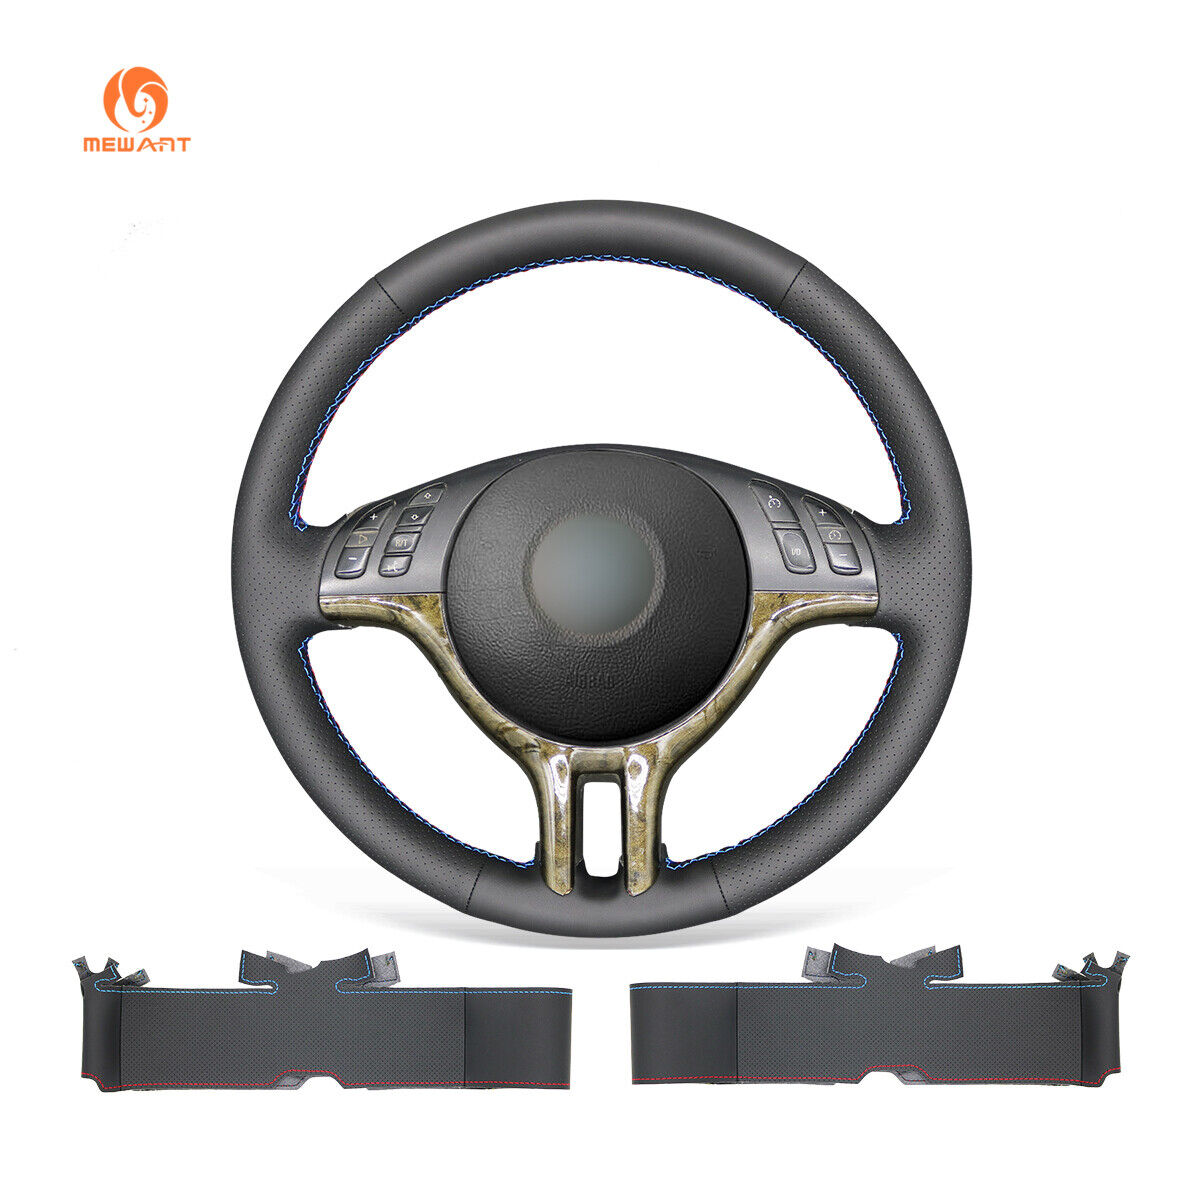 DIY PU Leather Steering Wheel Cover Wrap for 3 Series 325i 330i E46 E46/5 X5 E53